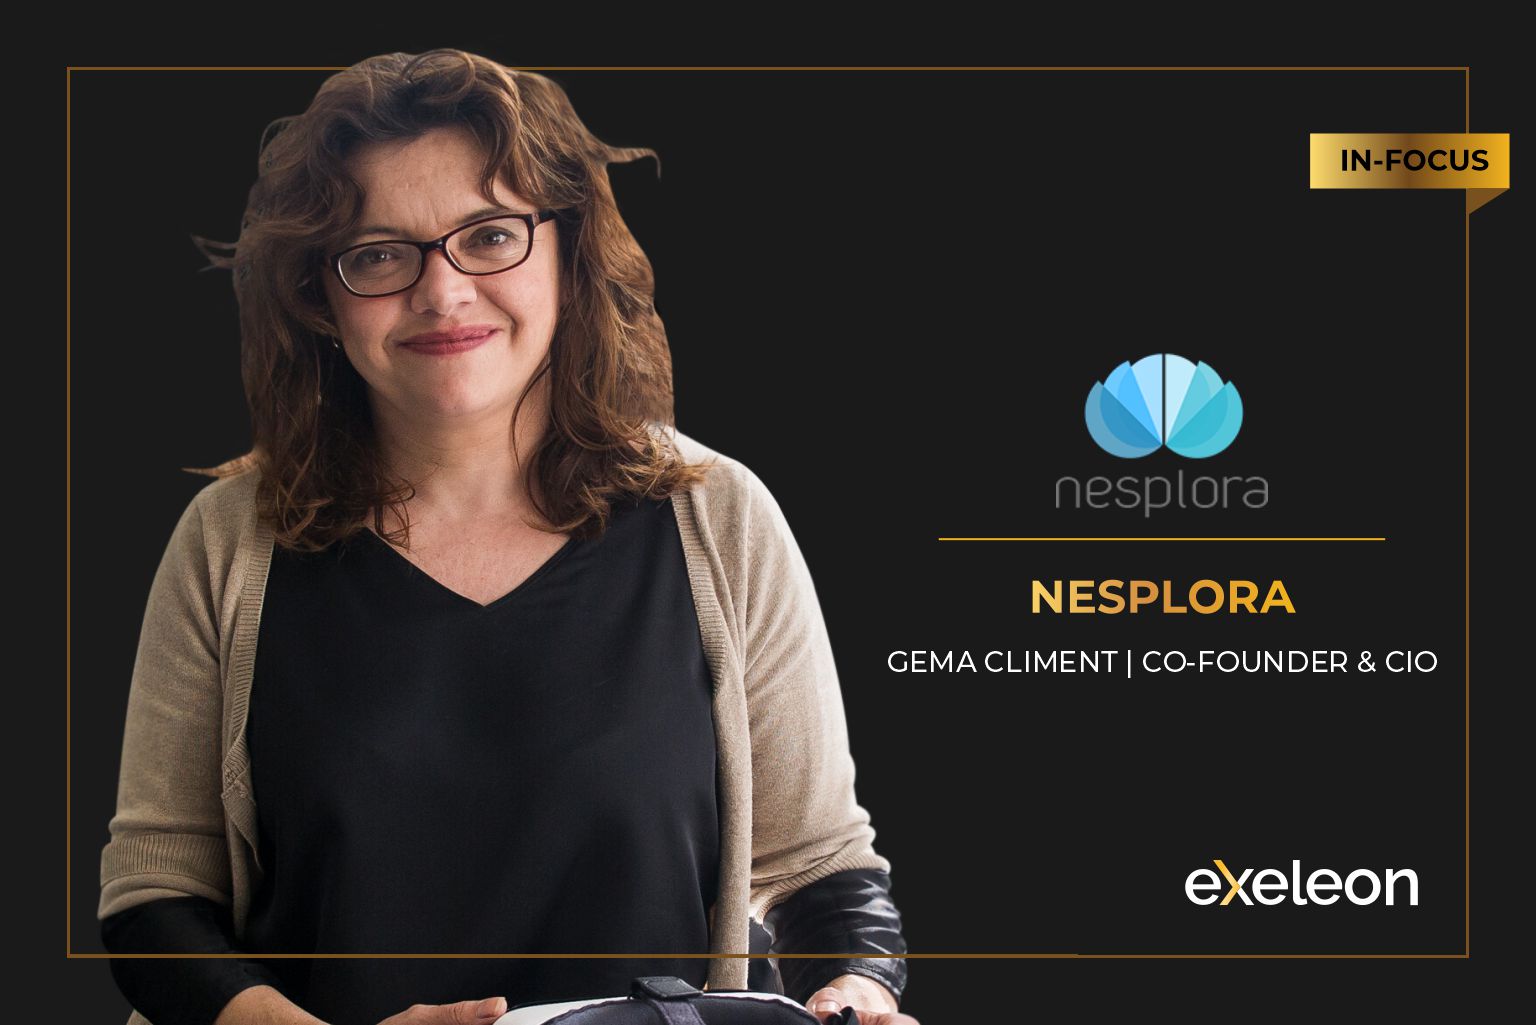 Nesplora_100 Best Companies_Exeleon Magazine